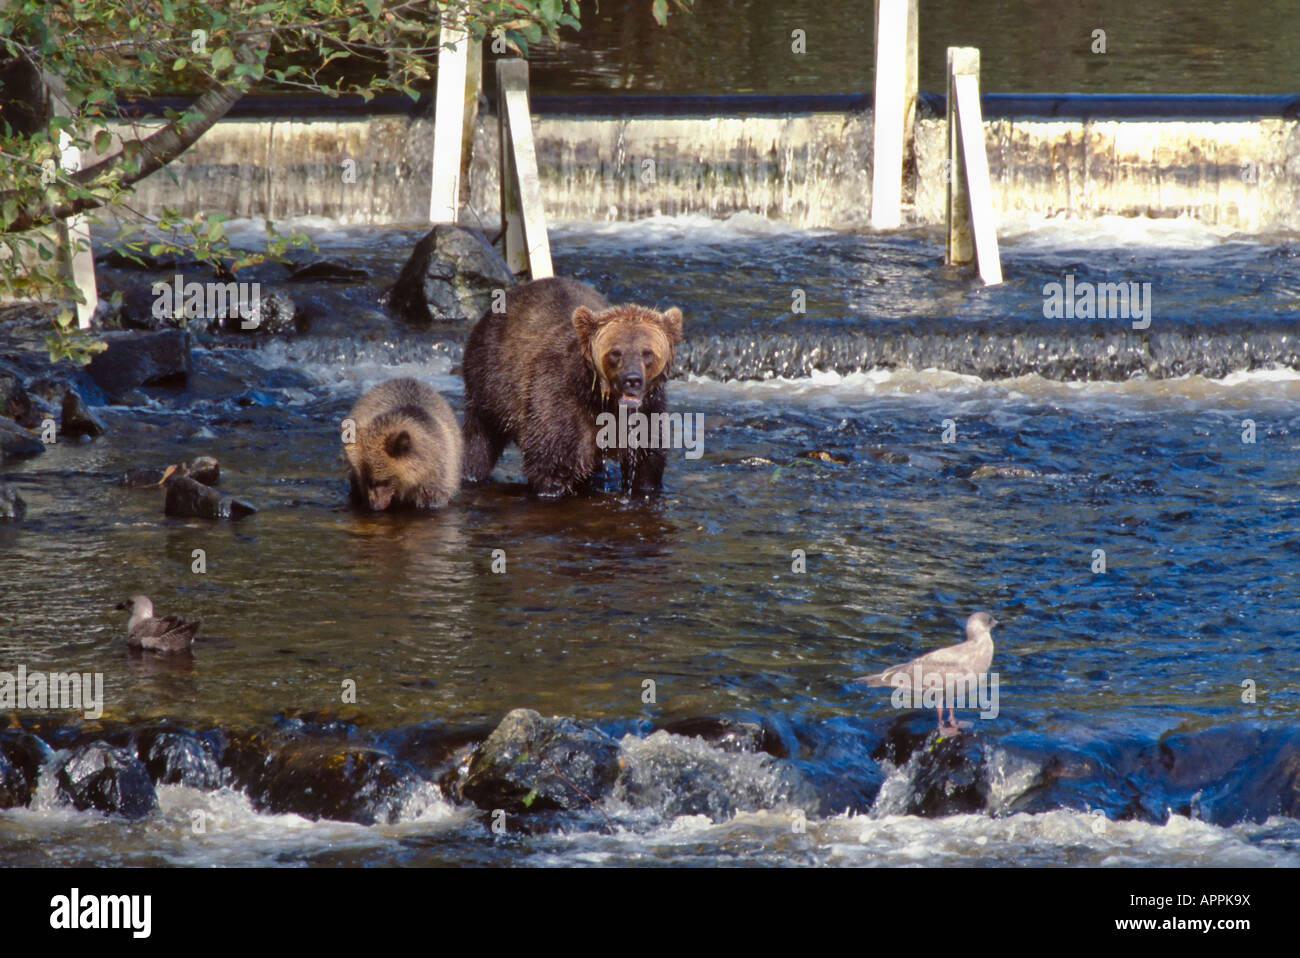 Weibliche grizzly Bär mit Cub Angeln auf Lachs gegen ein Wehr in Lachs laichen Kanal Glendale Fluss Knight Inlet BC C Stockfoto